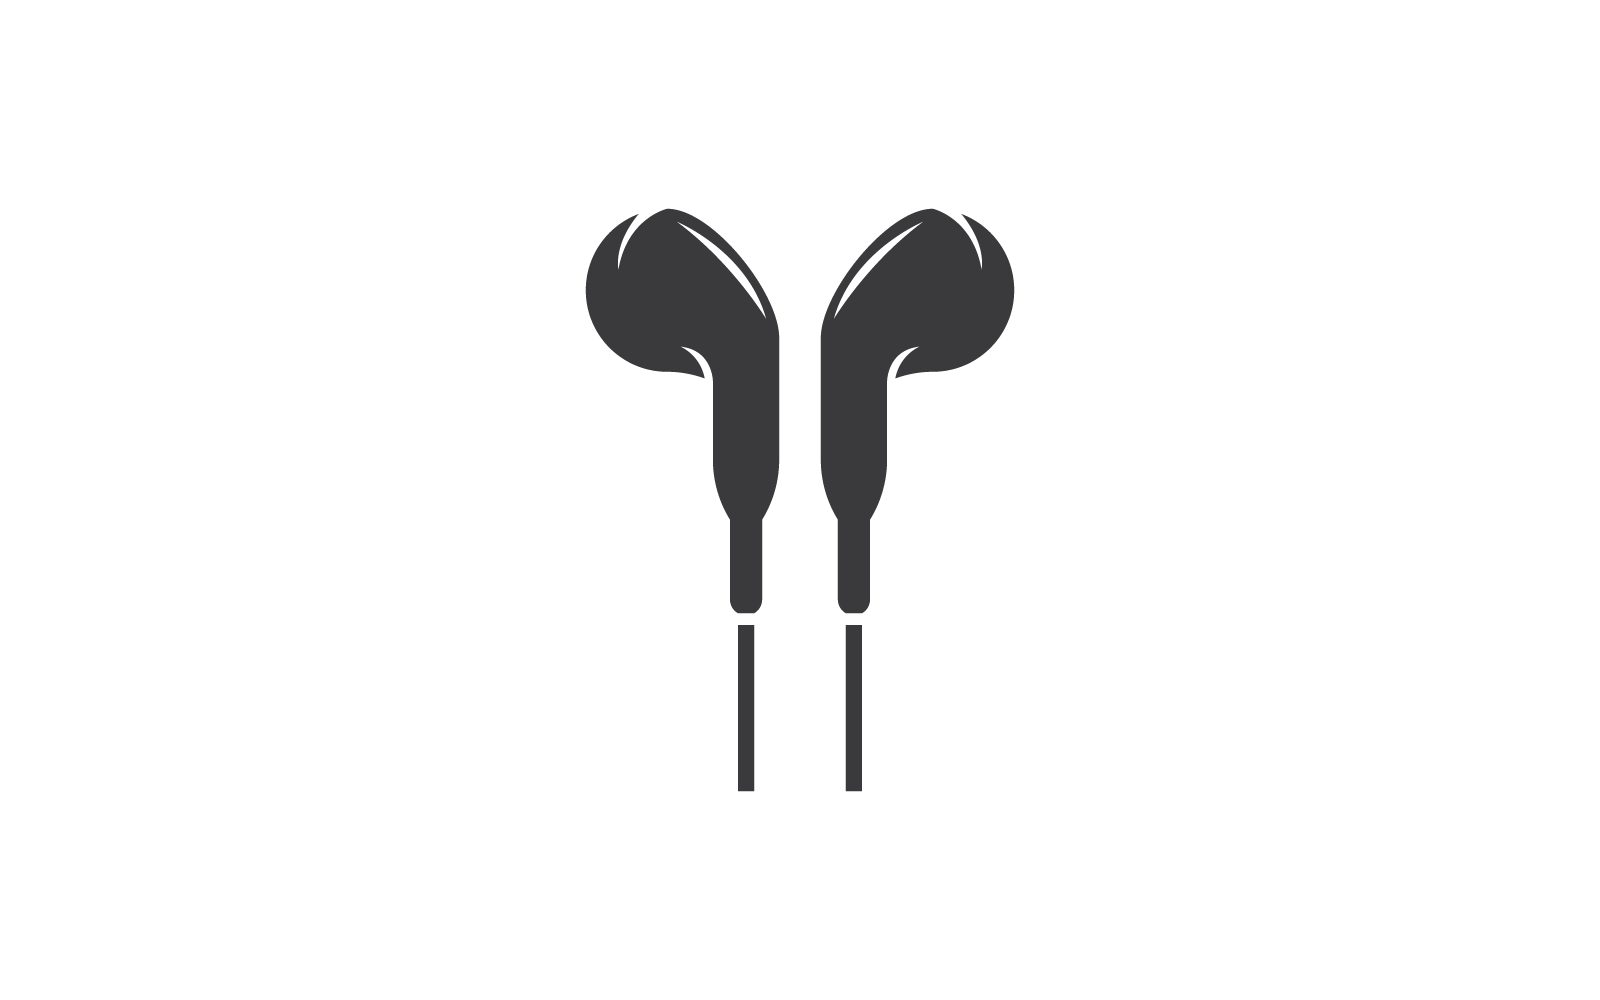 Kopfhörer, Ohrhörer-Illustrationssymbol, Vektor-Flachbild